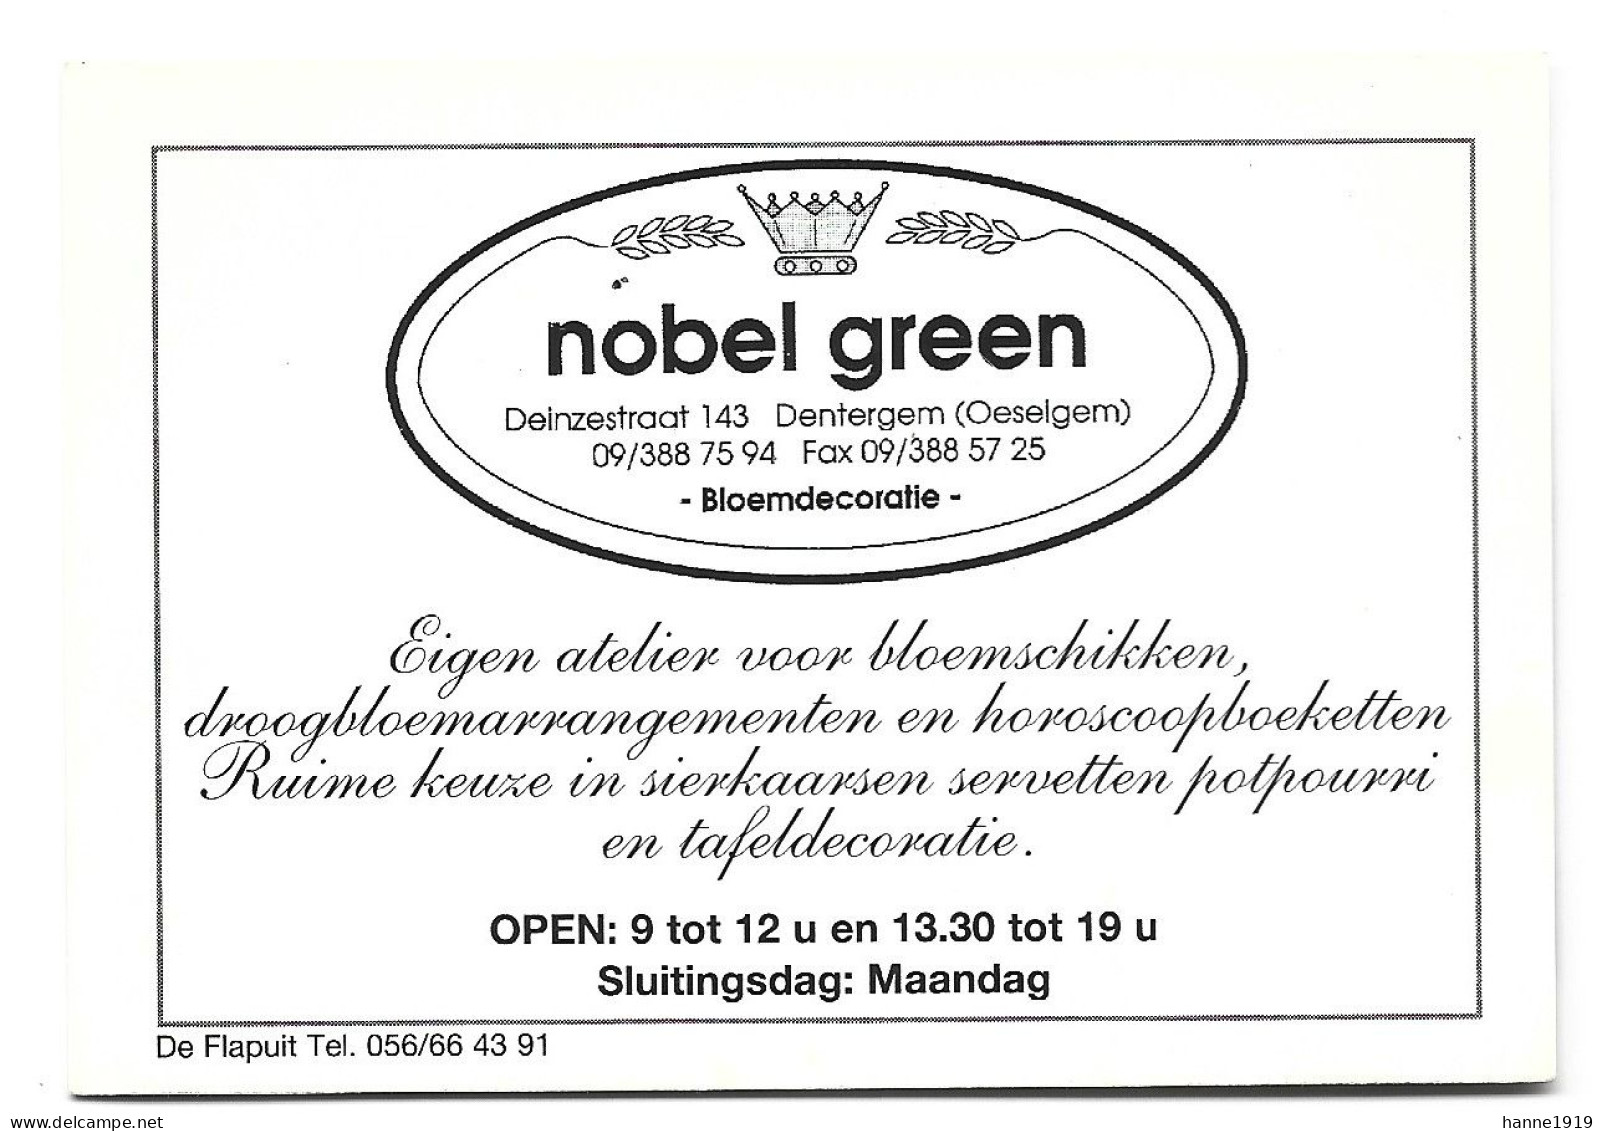 Dentergem Oeselgem Deinzestraat Atelier Nobel Green Etiquette Visitekaartje Htje - Tarjetas De Visita